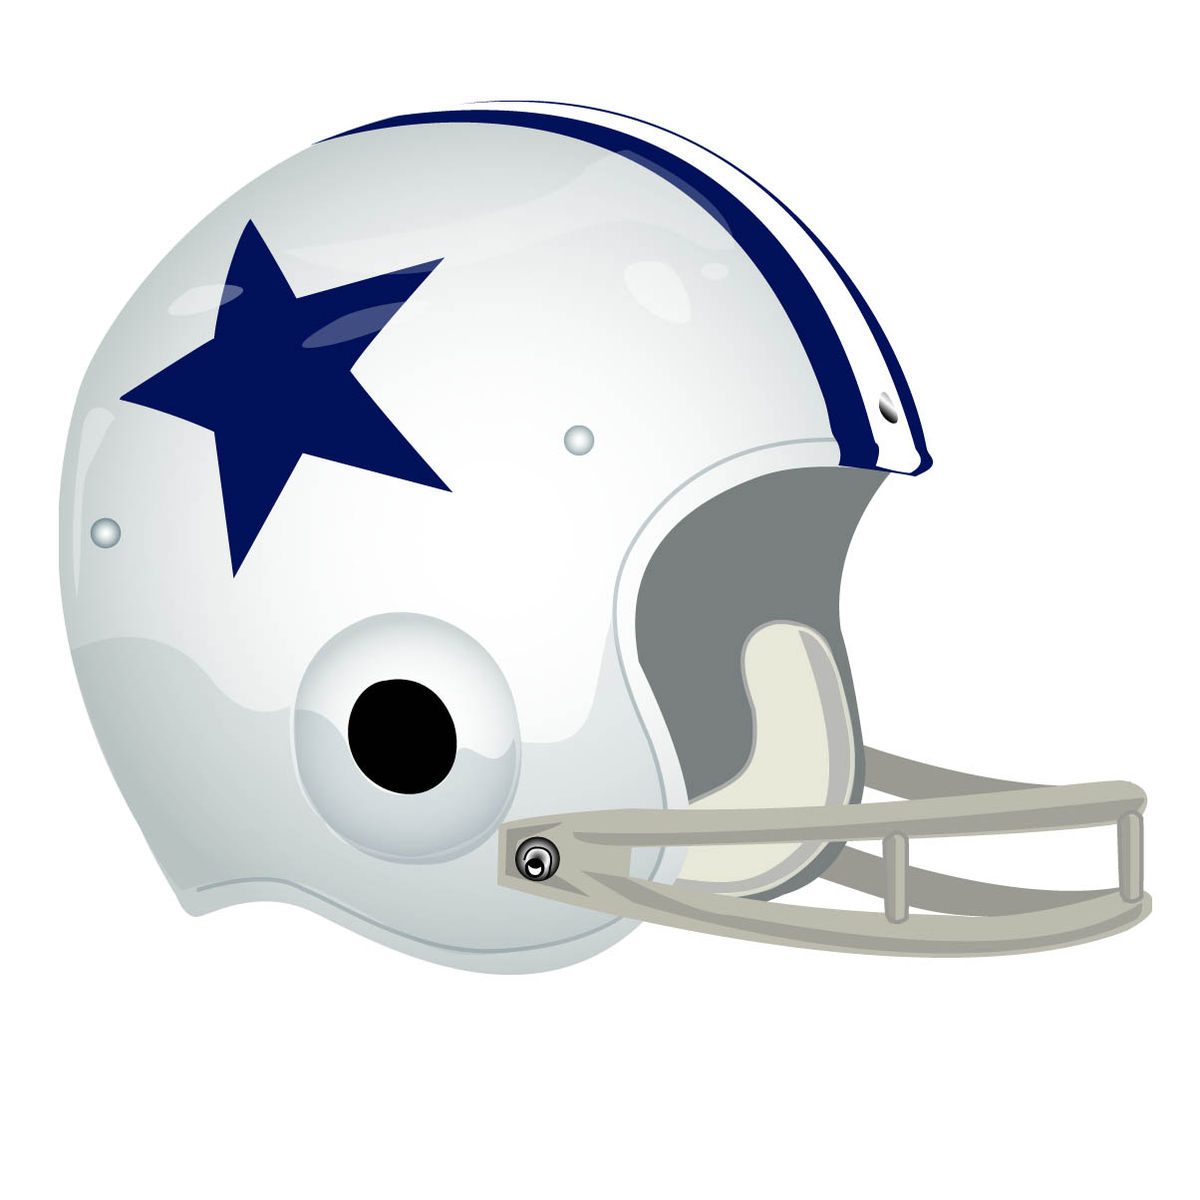 official cowboys helmet